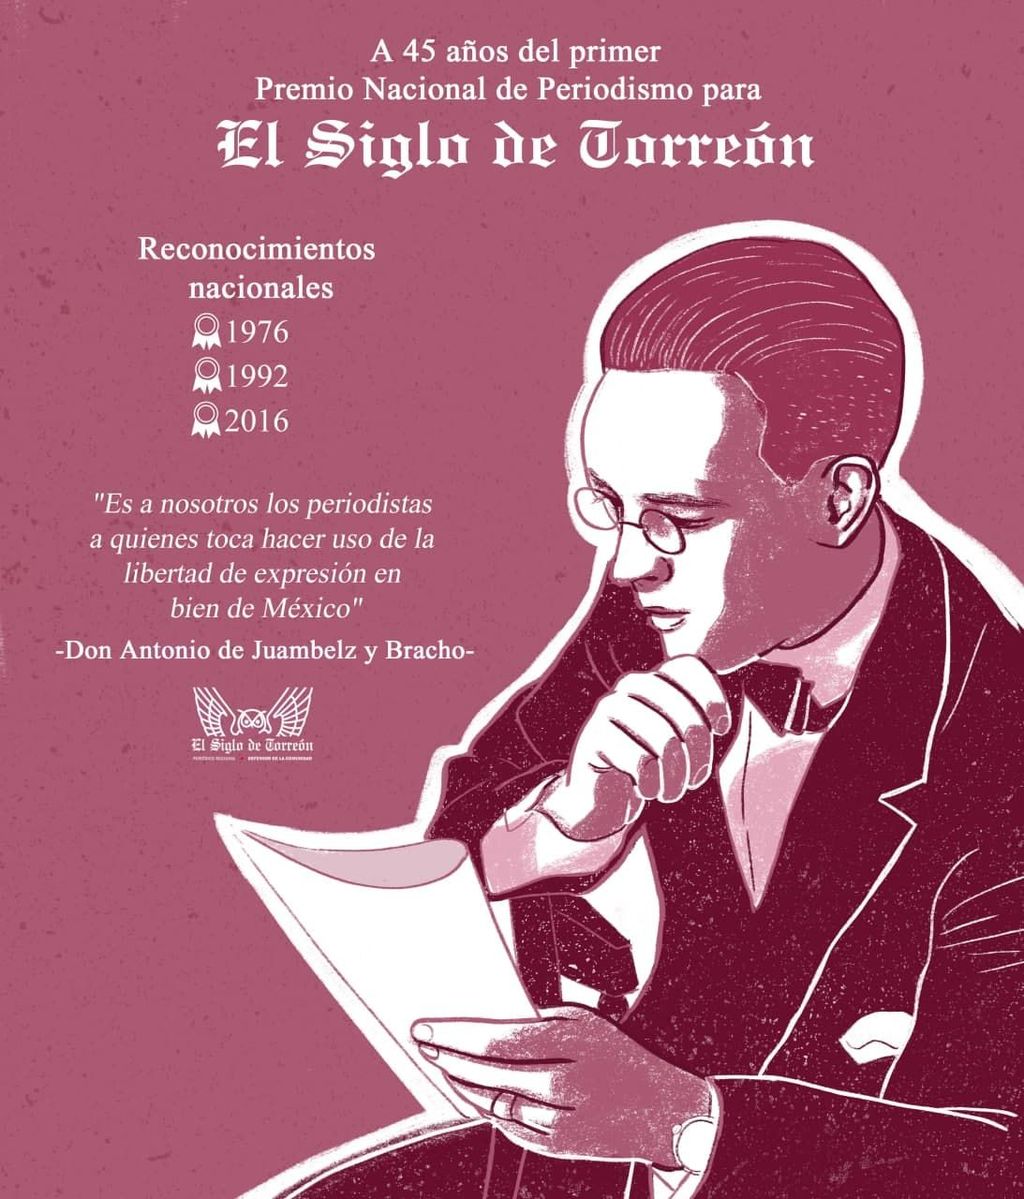 El primer Premio Nacional de Periodismo para El Siglo se entregó el 7 de junio de 1976.